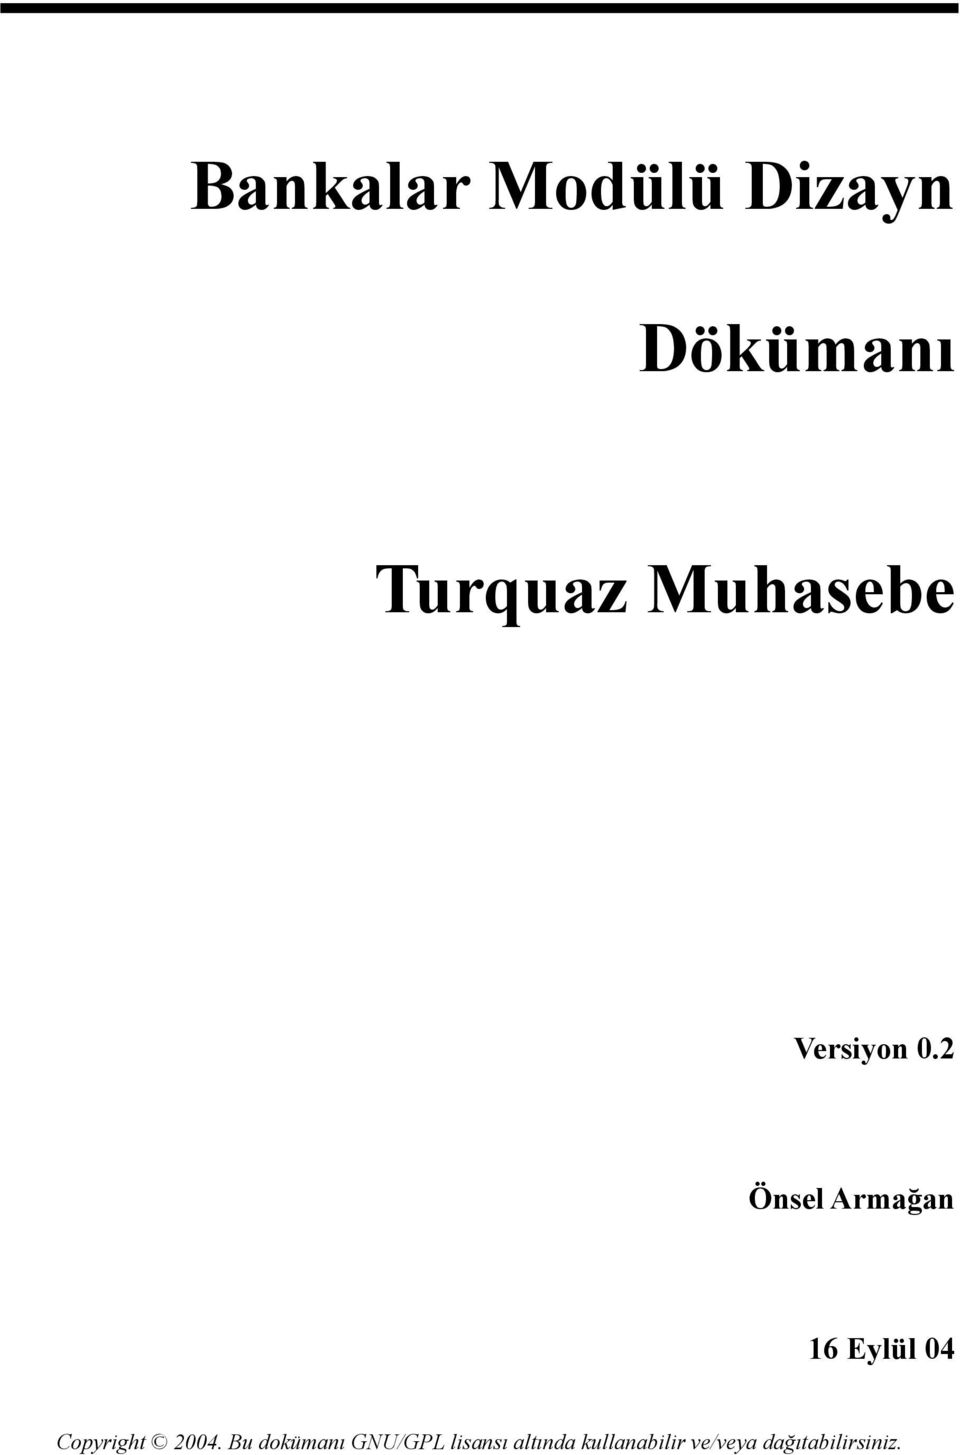 Turquaz Muhasebe